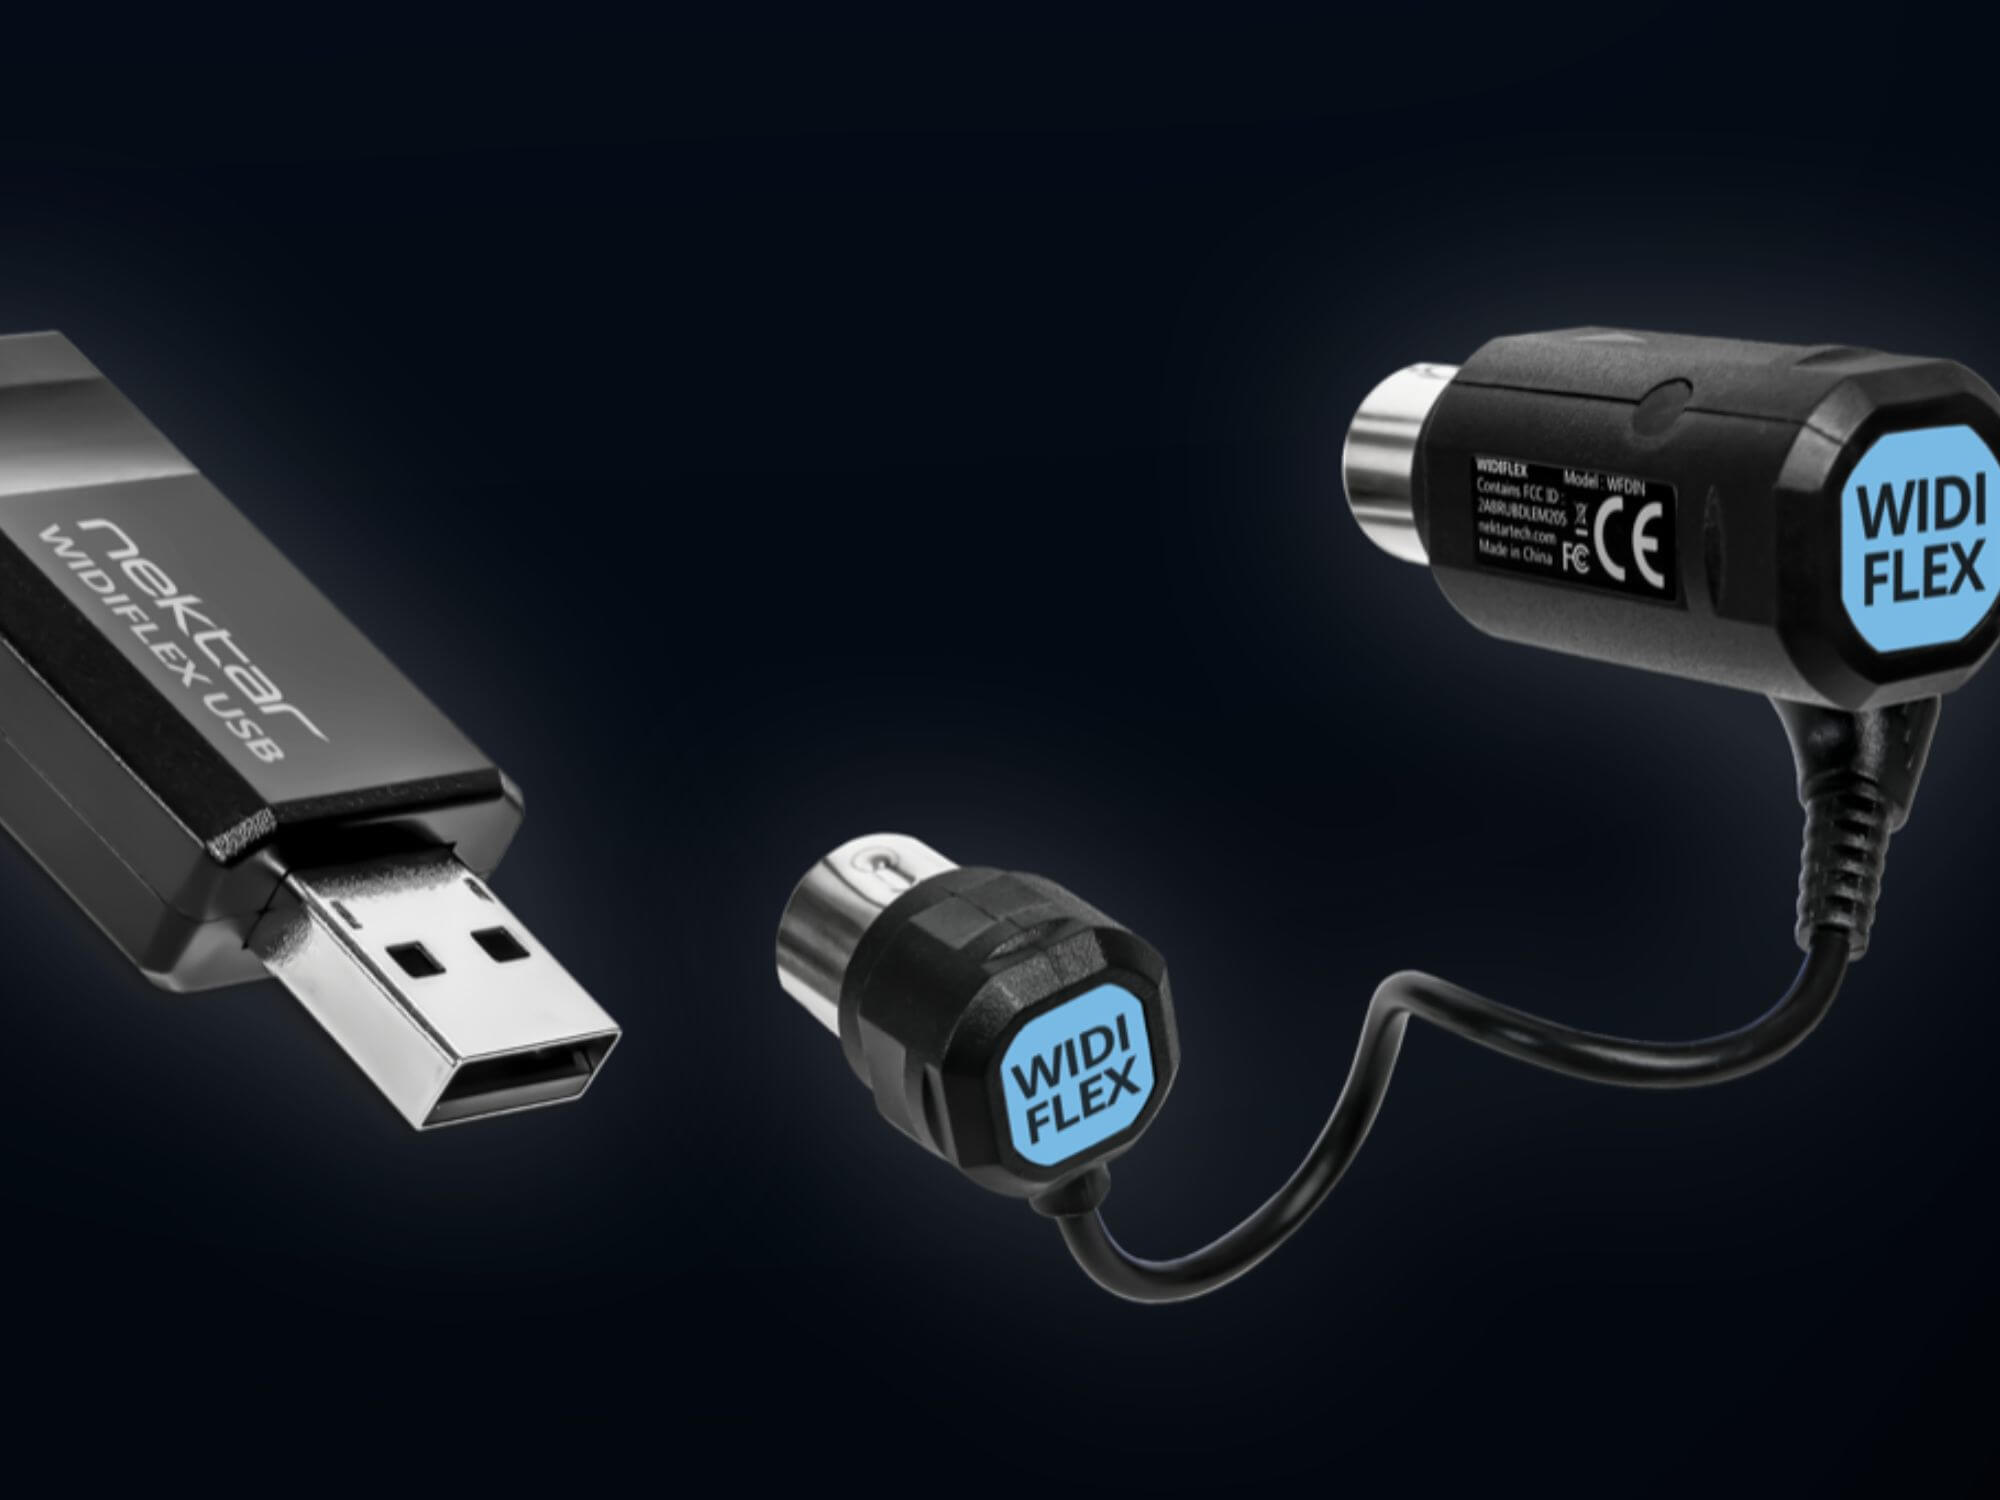 Nektar Widiflex & Widiflex USB